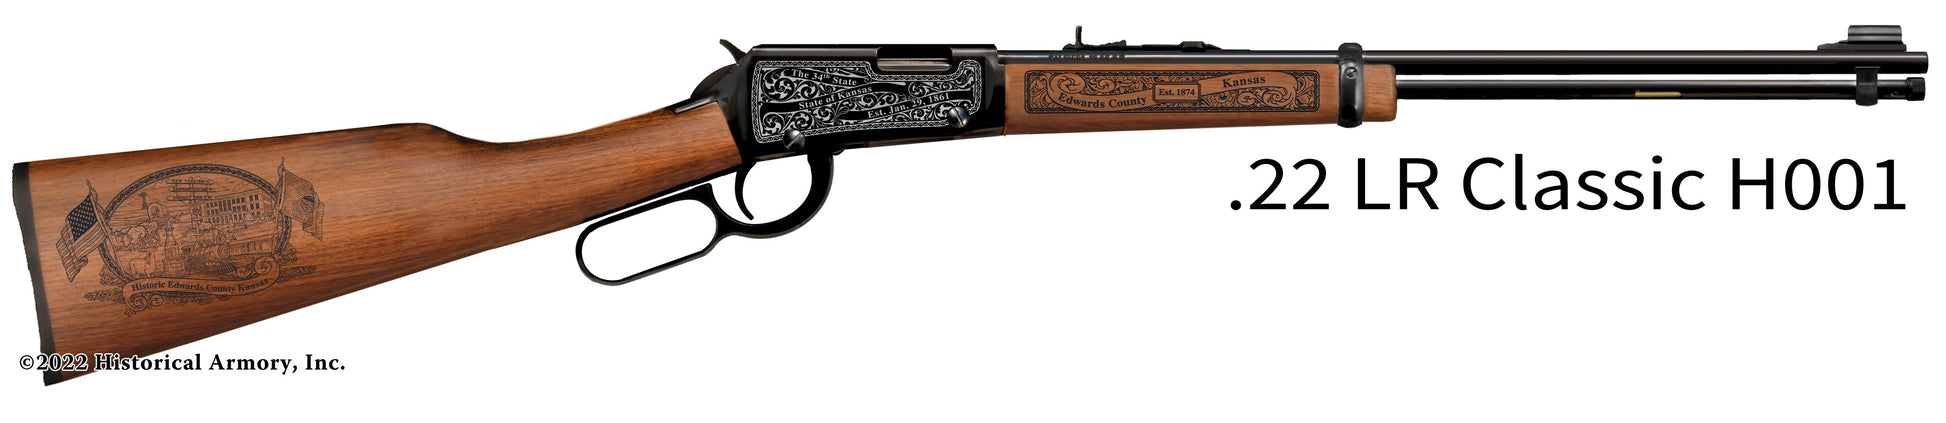 Edwards County Kansas Engraved Henry H001 Rifle